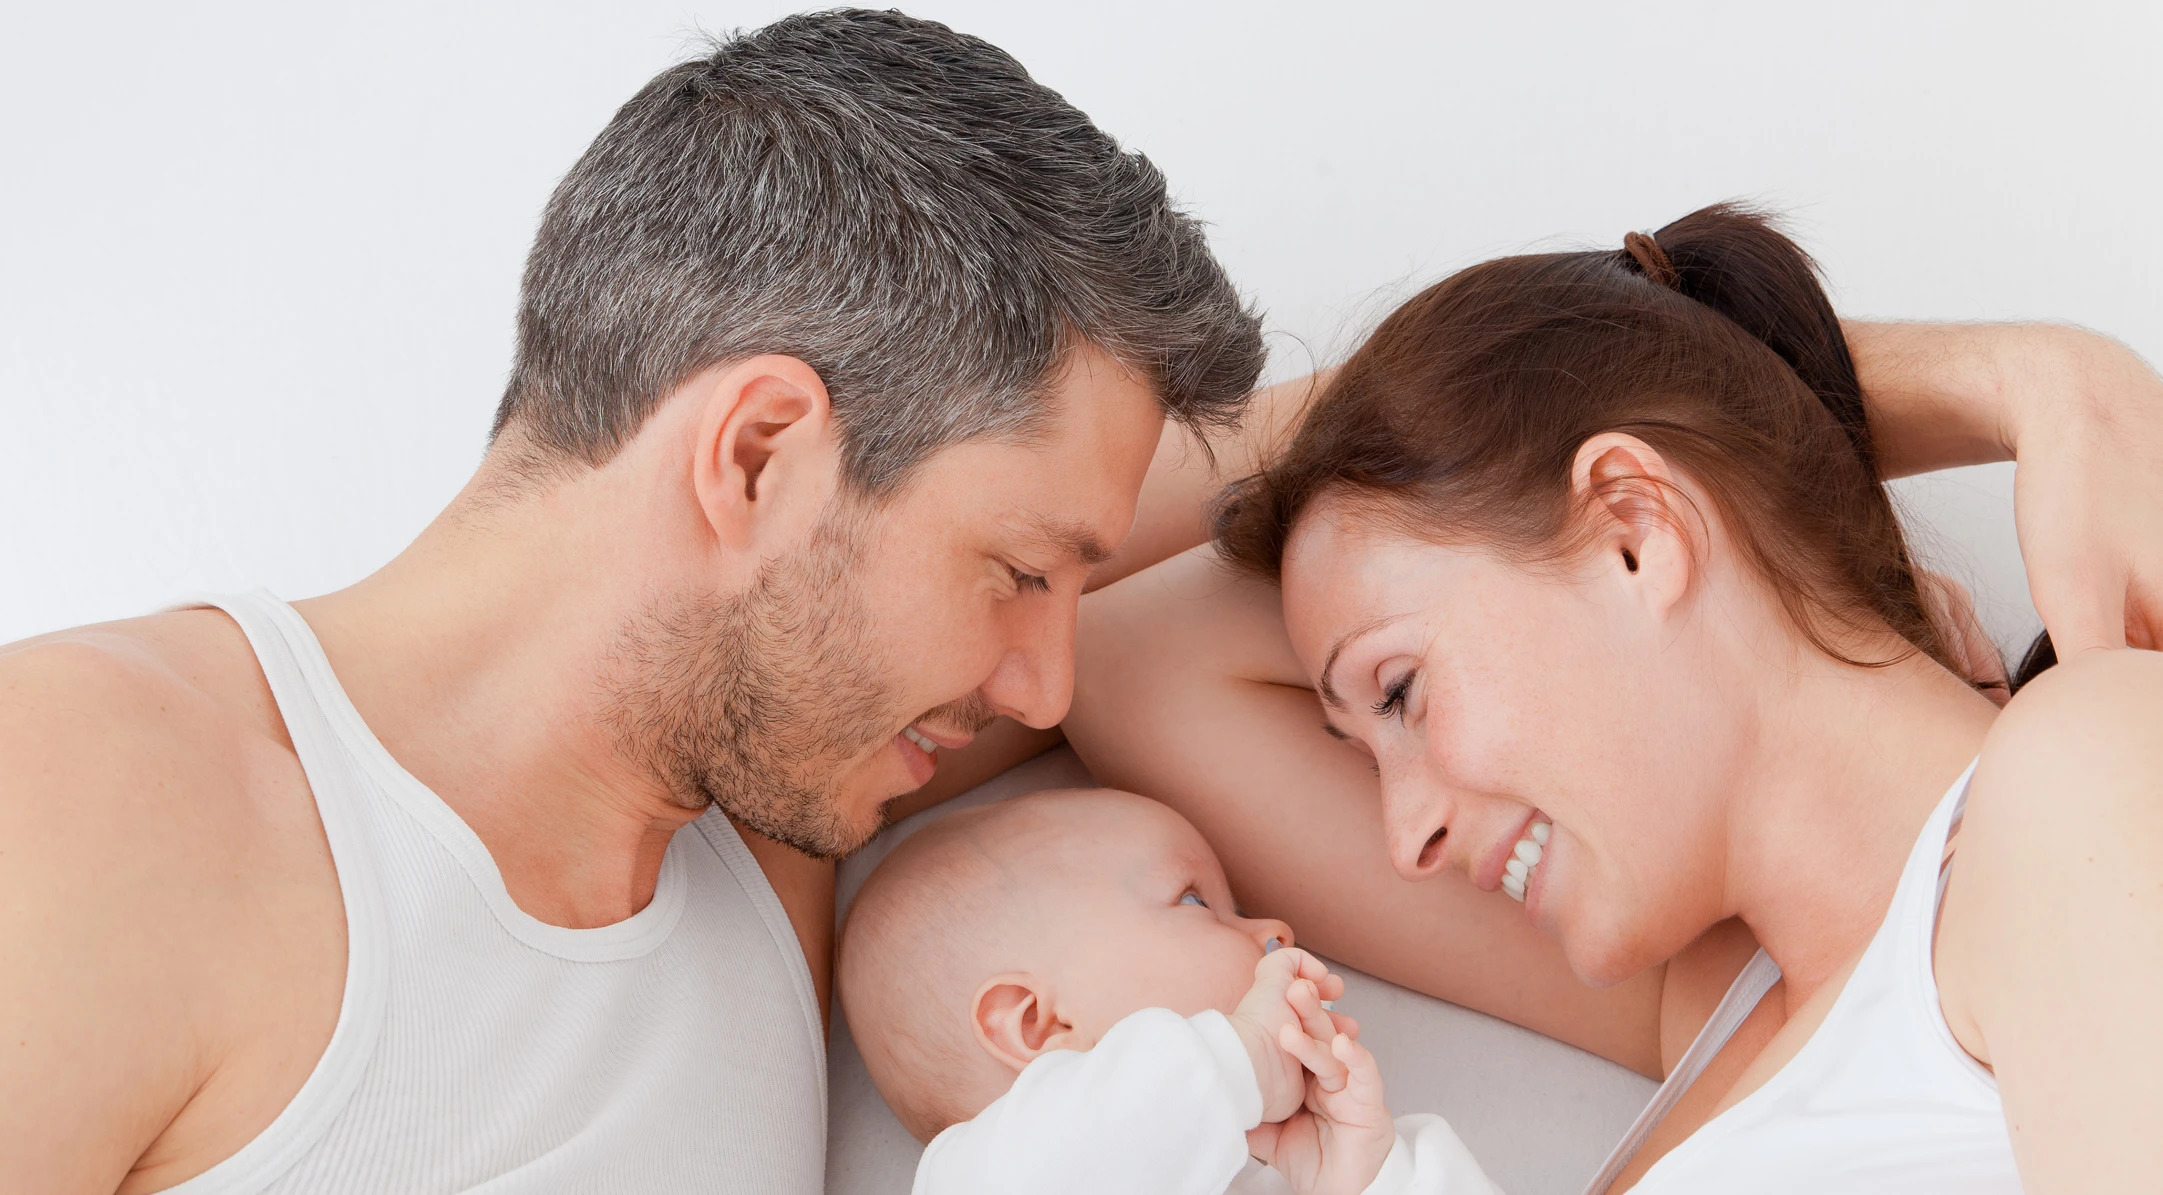 Функции семьи рождение детей. Мужчины женщины и дети. Мужчина и женщина с младенцем. Репродуктивная функция. Репродуктивная функция семьи.